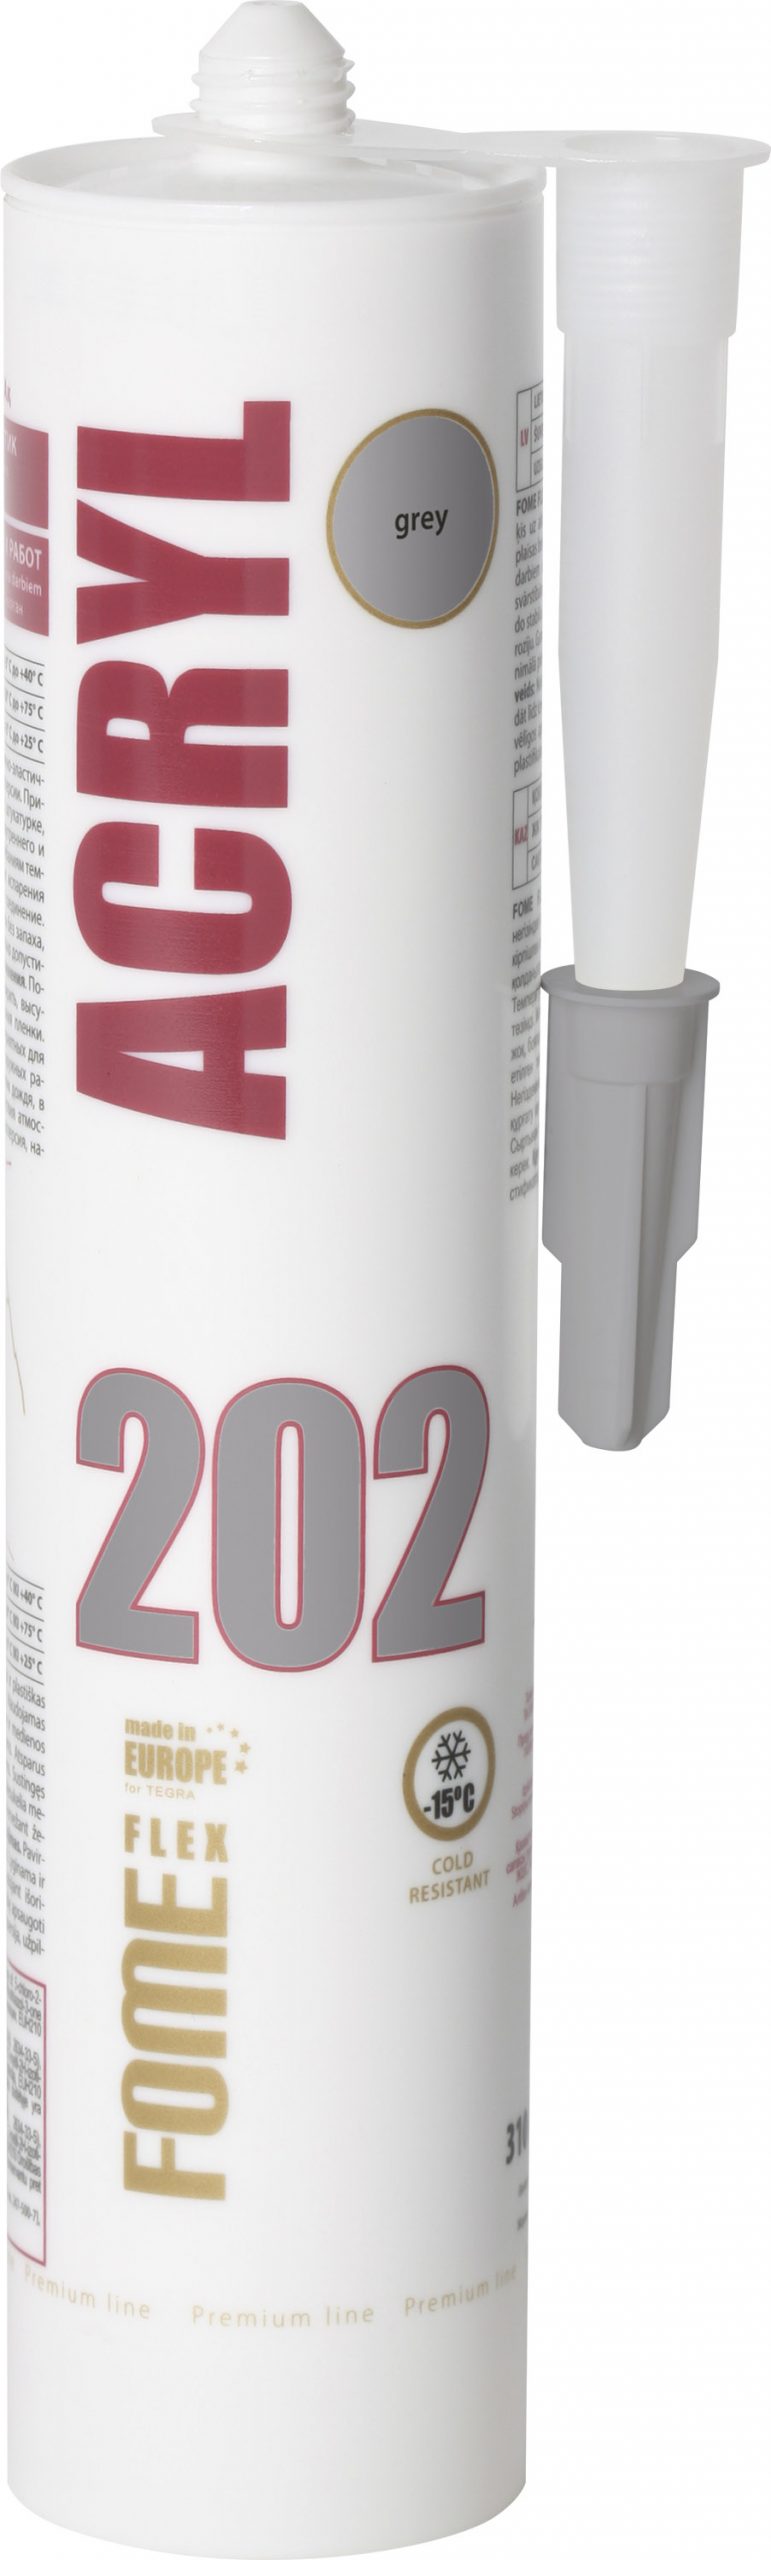 ACRYL 202 grey acrylic sealant